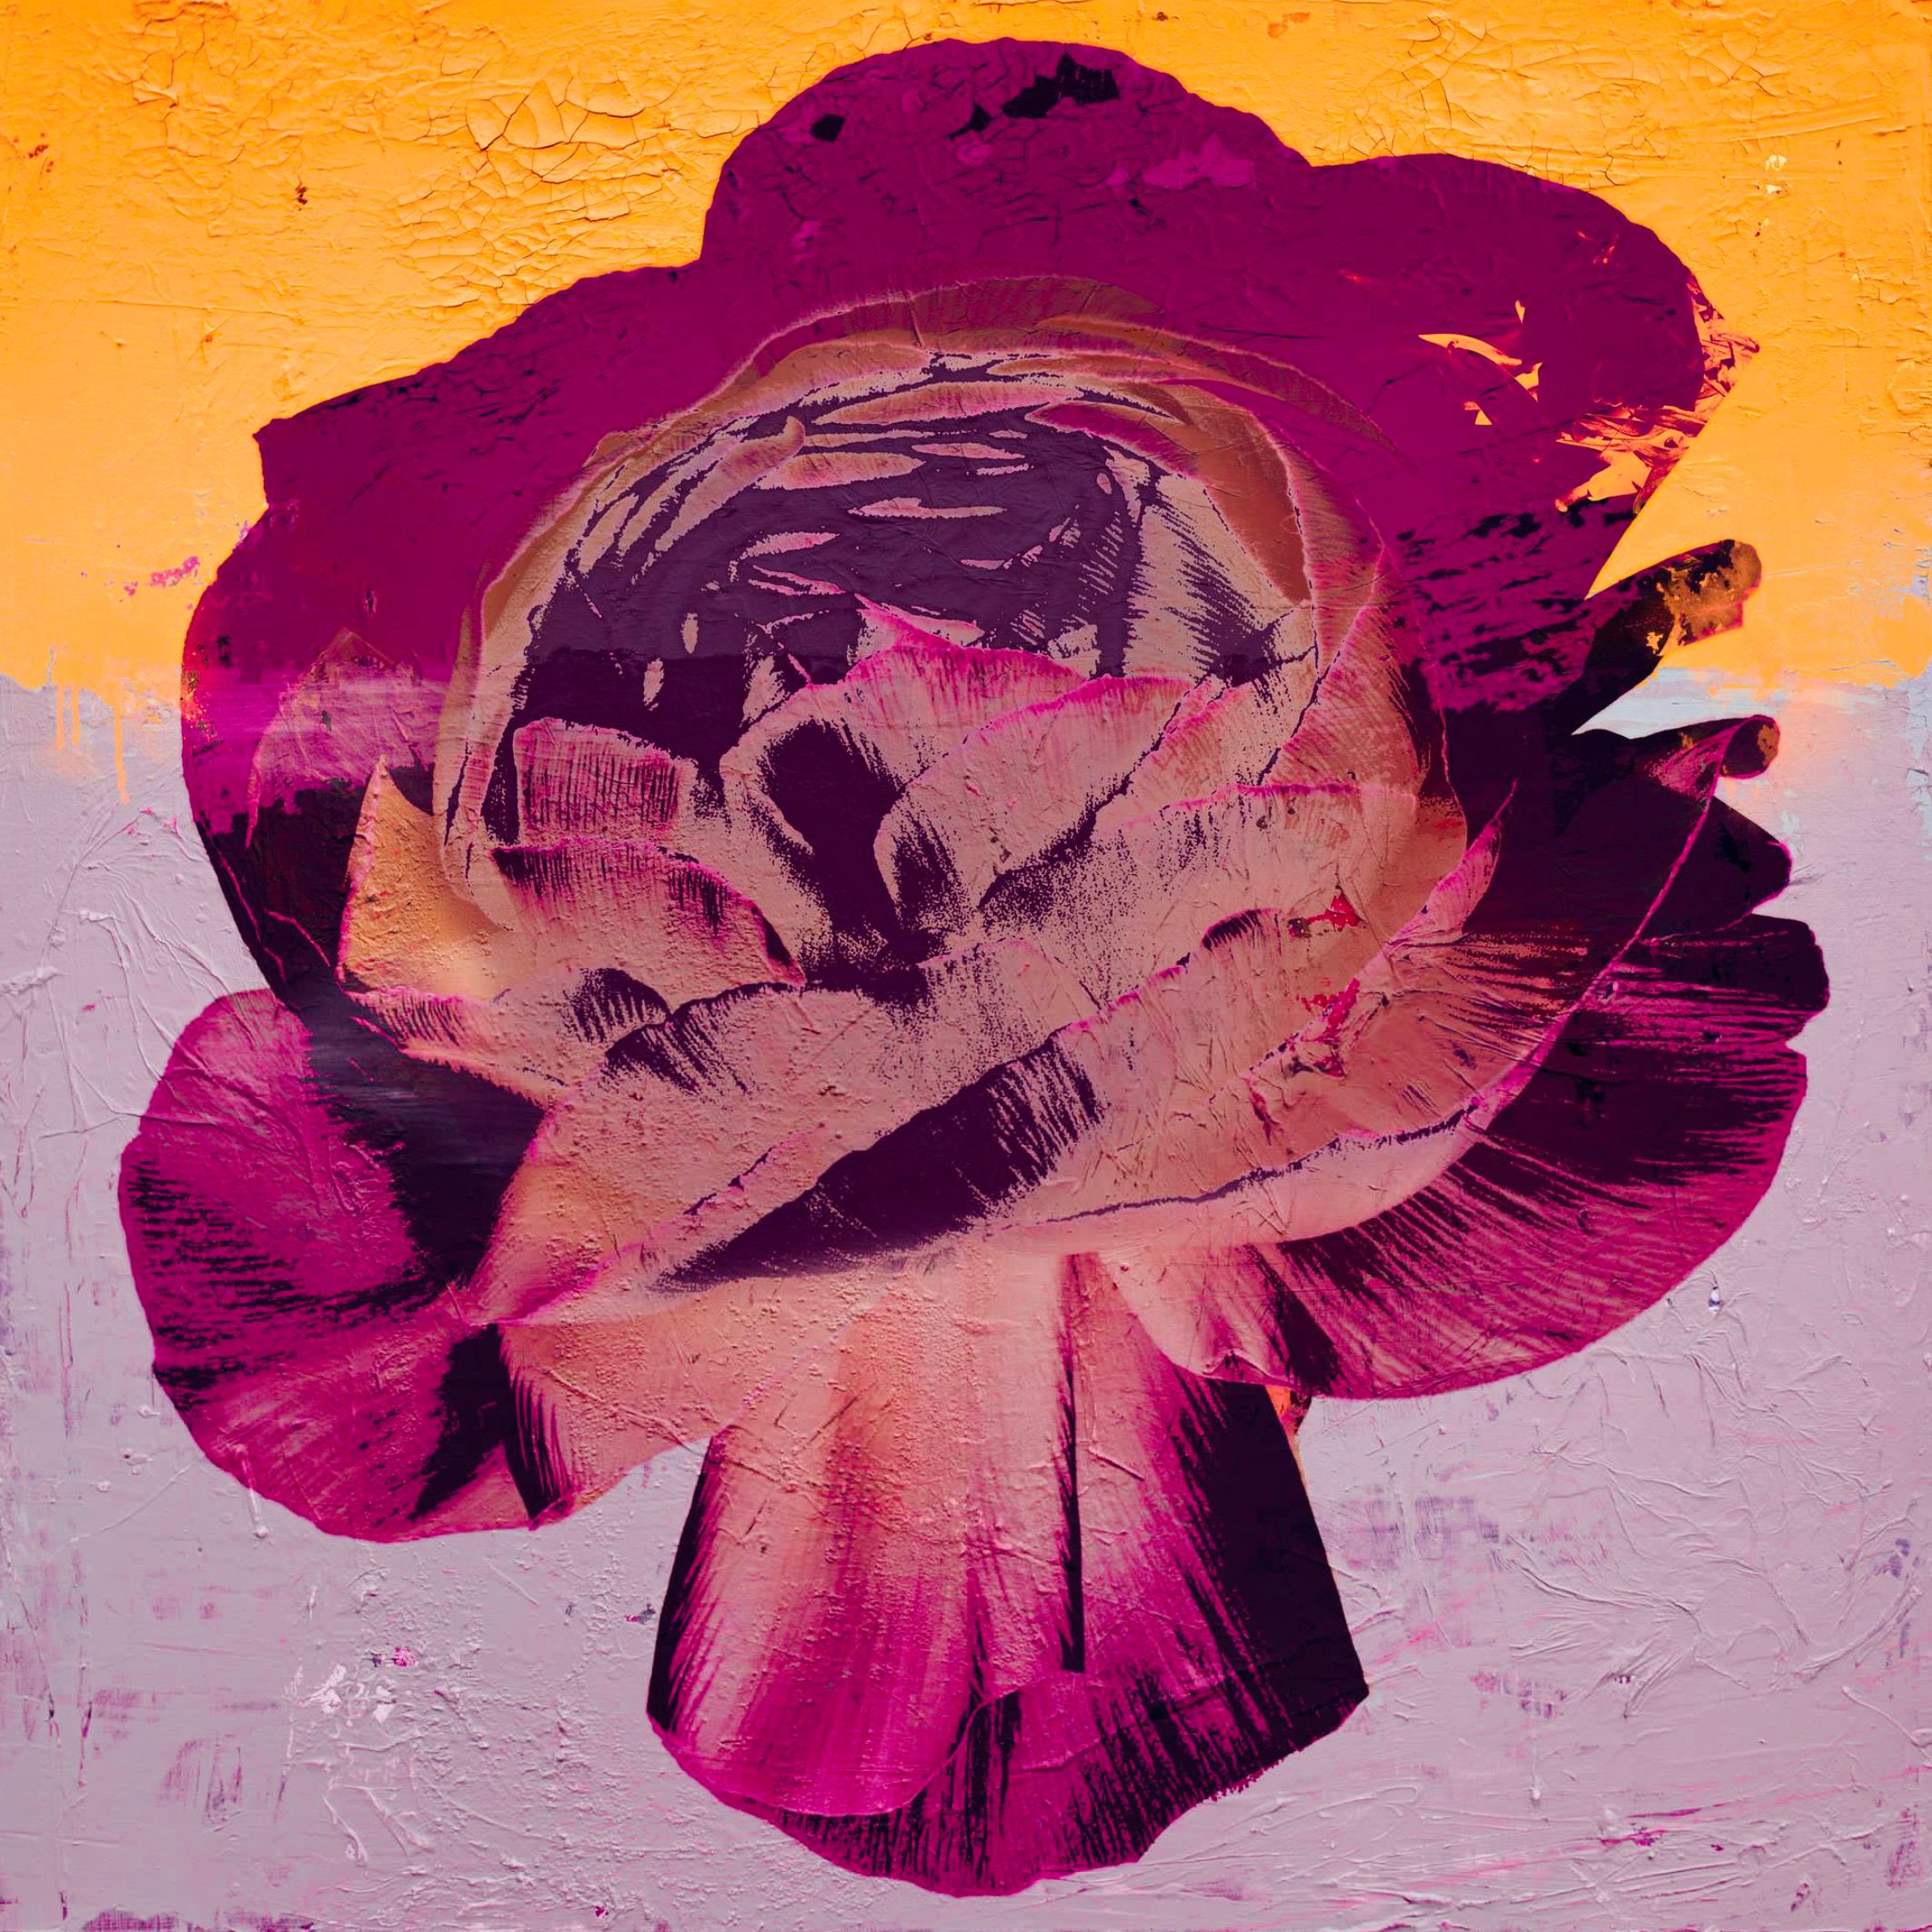 Teis Albers peinture abstraite fleur de rose sur fond orange et rose